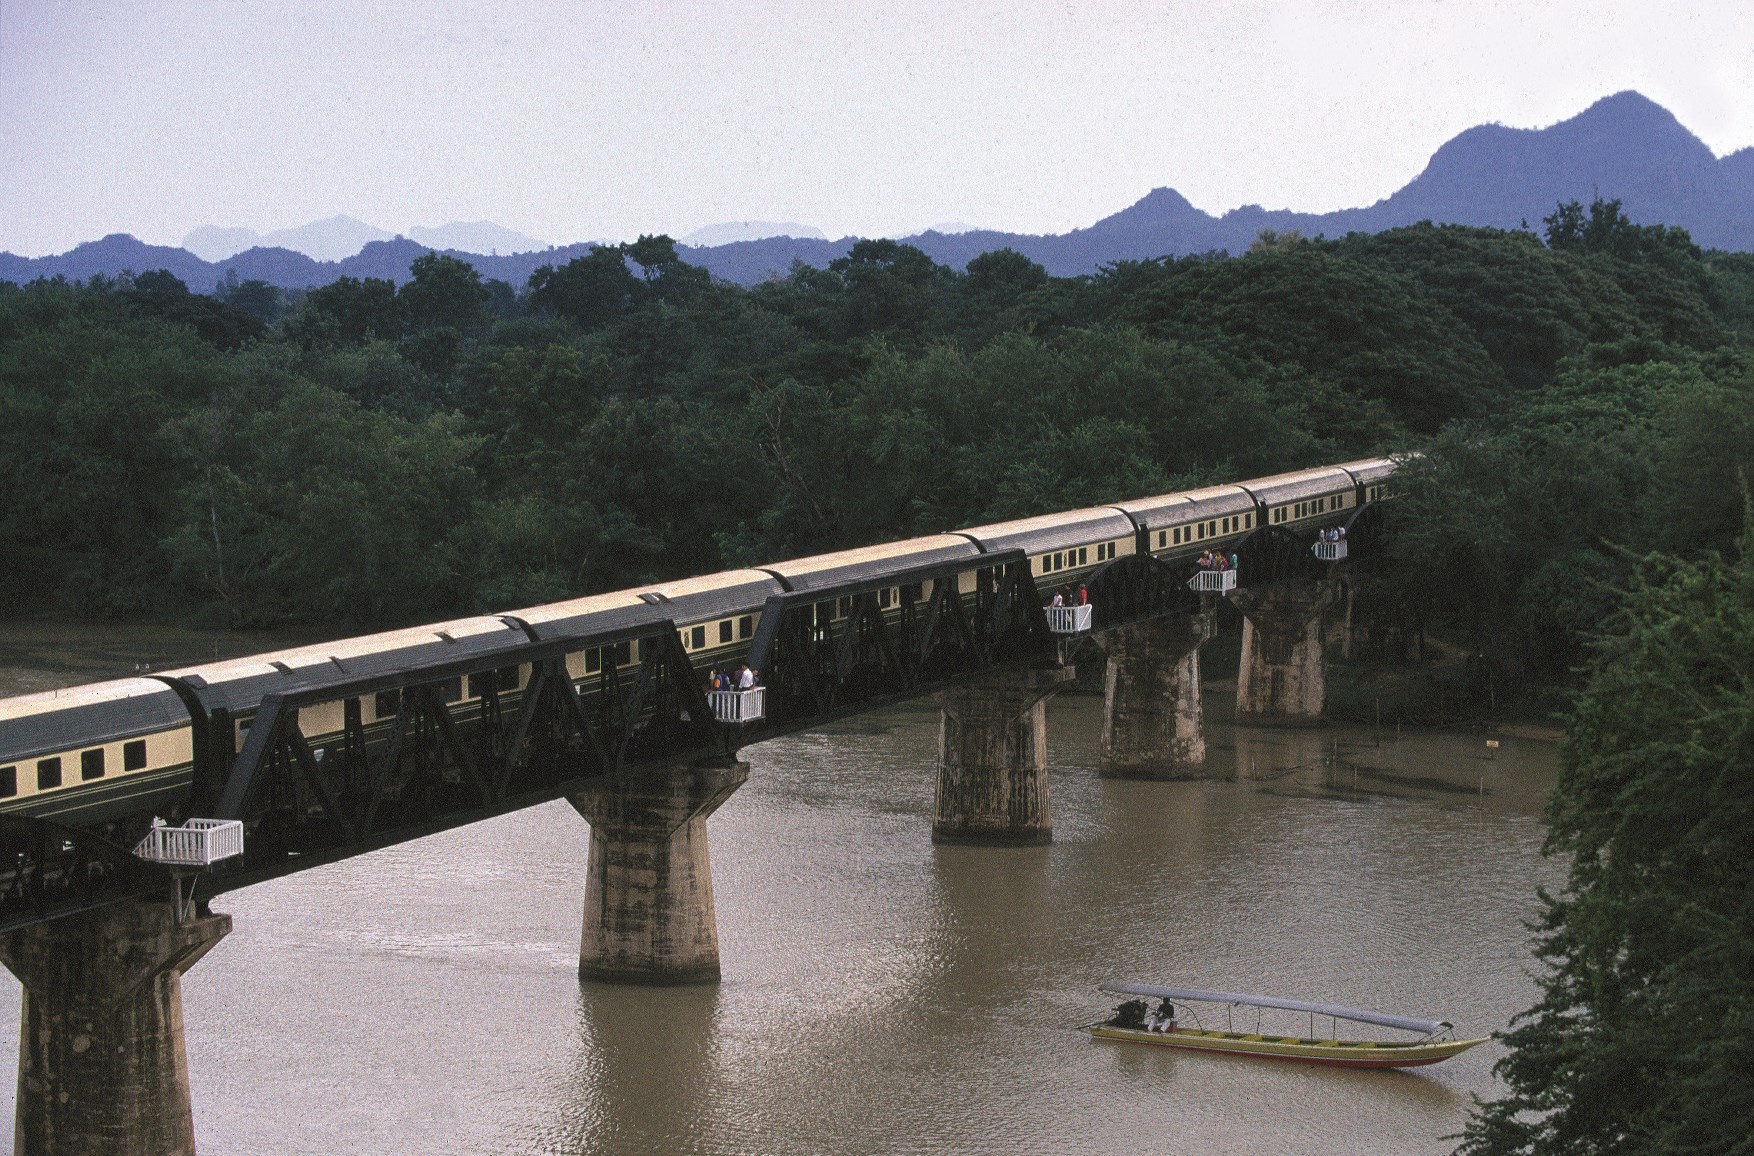 Eastern Oriental Express train